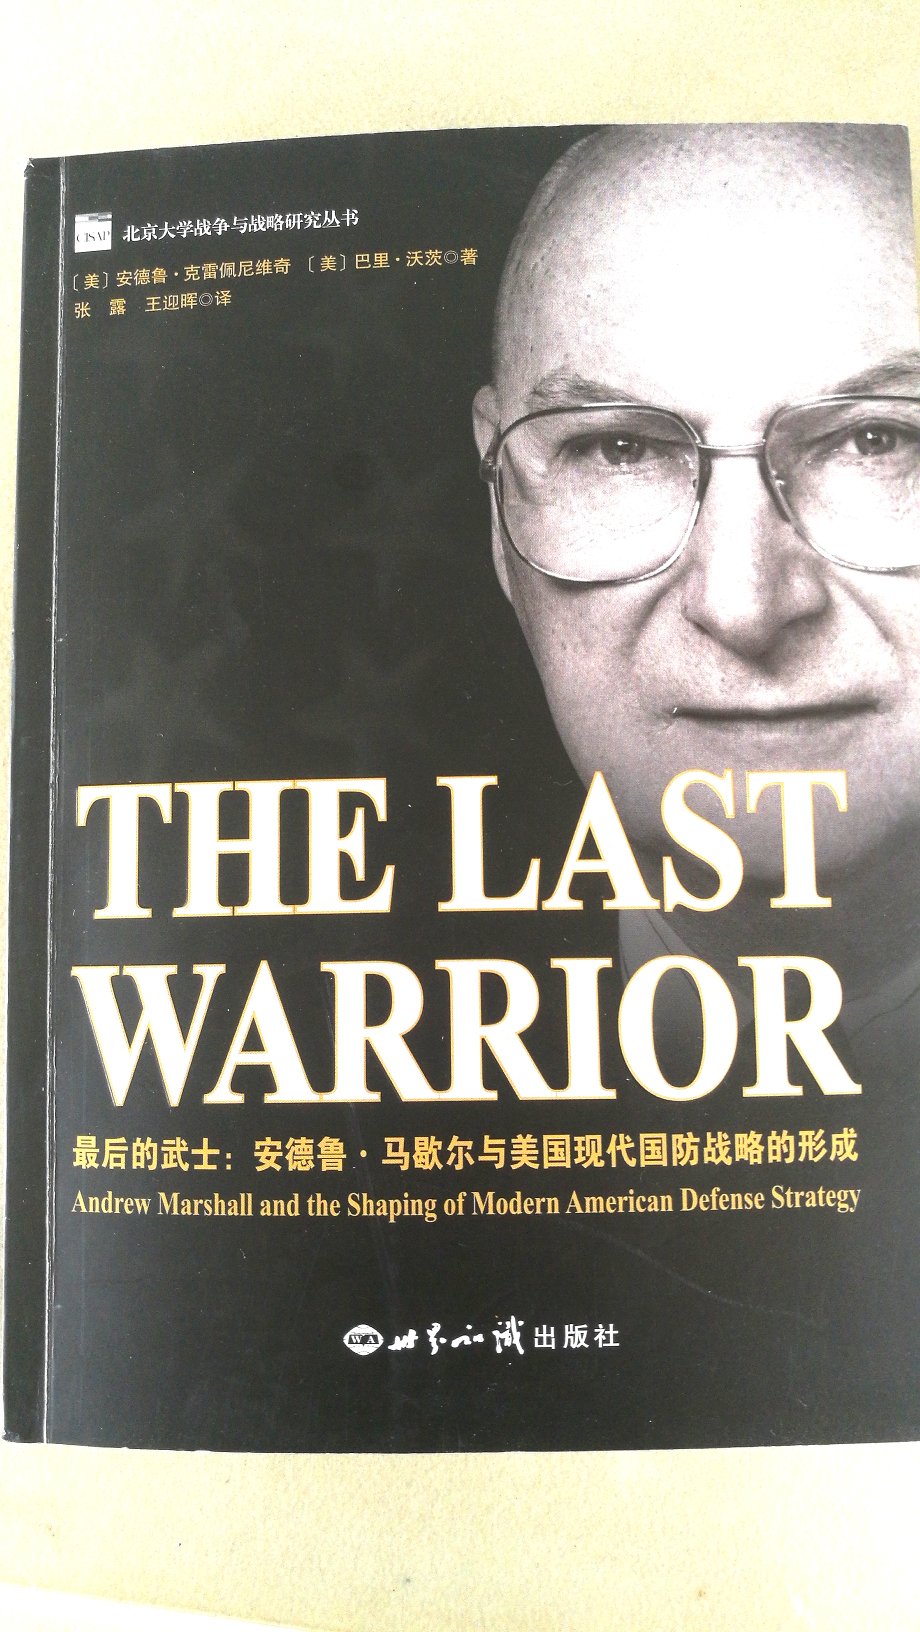 这本书中虽然有个别排版错误，但本书确实是了解净评估和美国国防战略的一本绝佳之书，强烈荐读！